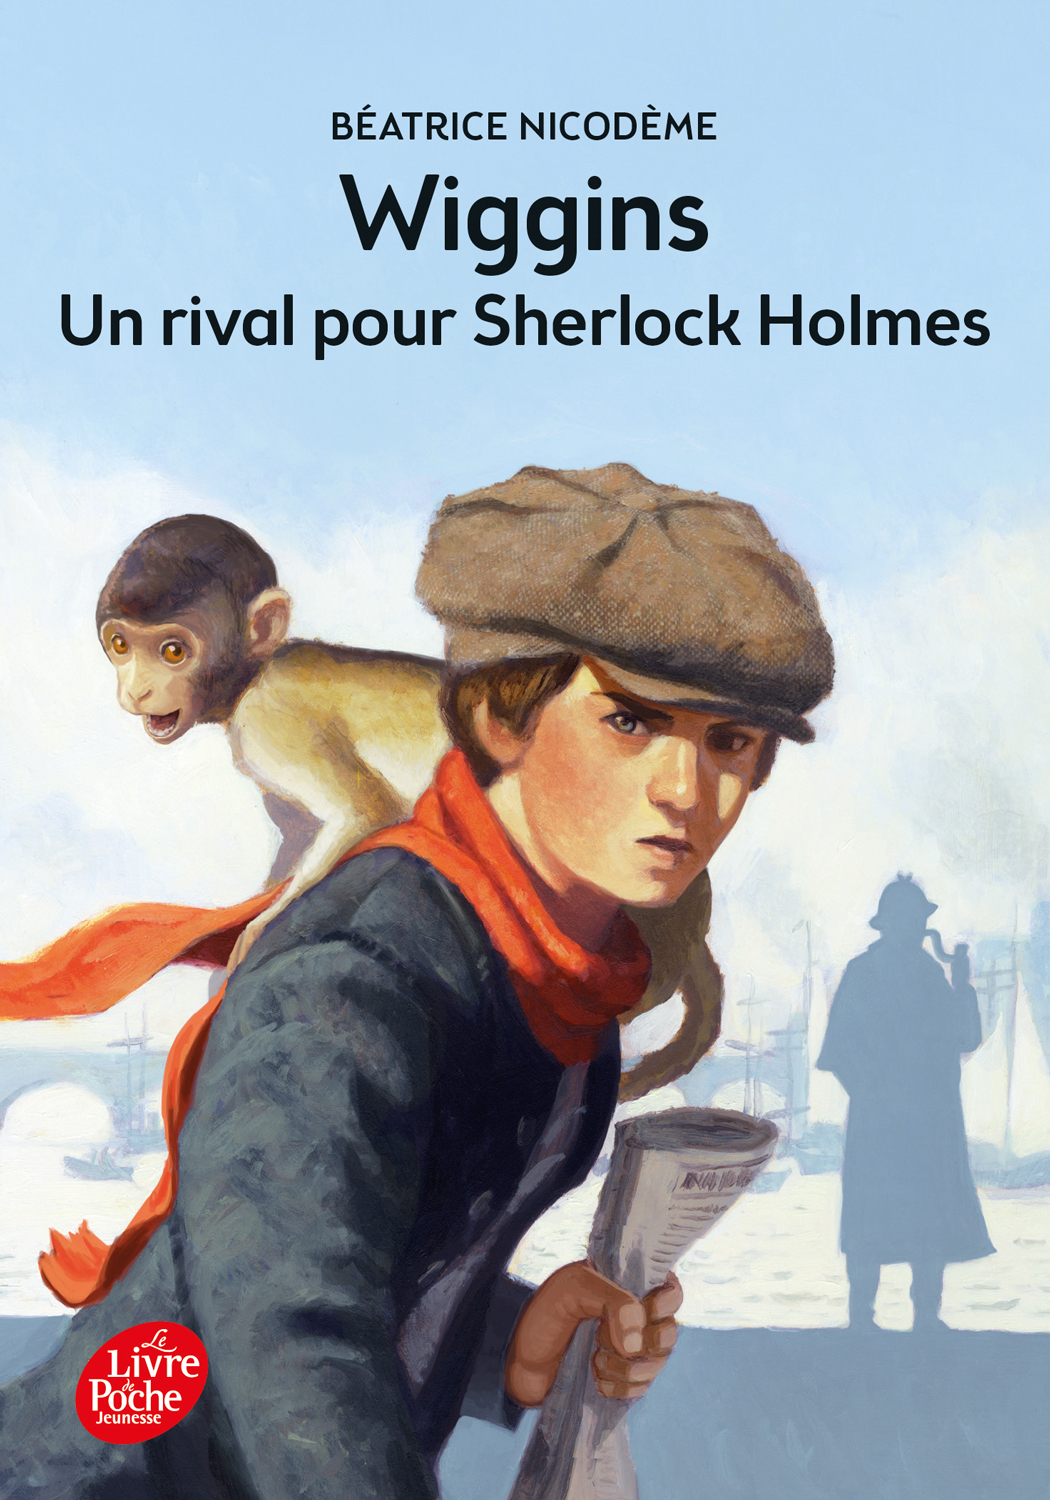 Beatrice Nicodeme autrice couverture du roman Wiggins Un rival pour Sherlock Holmes